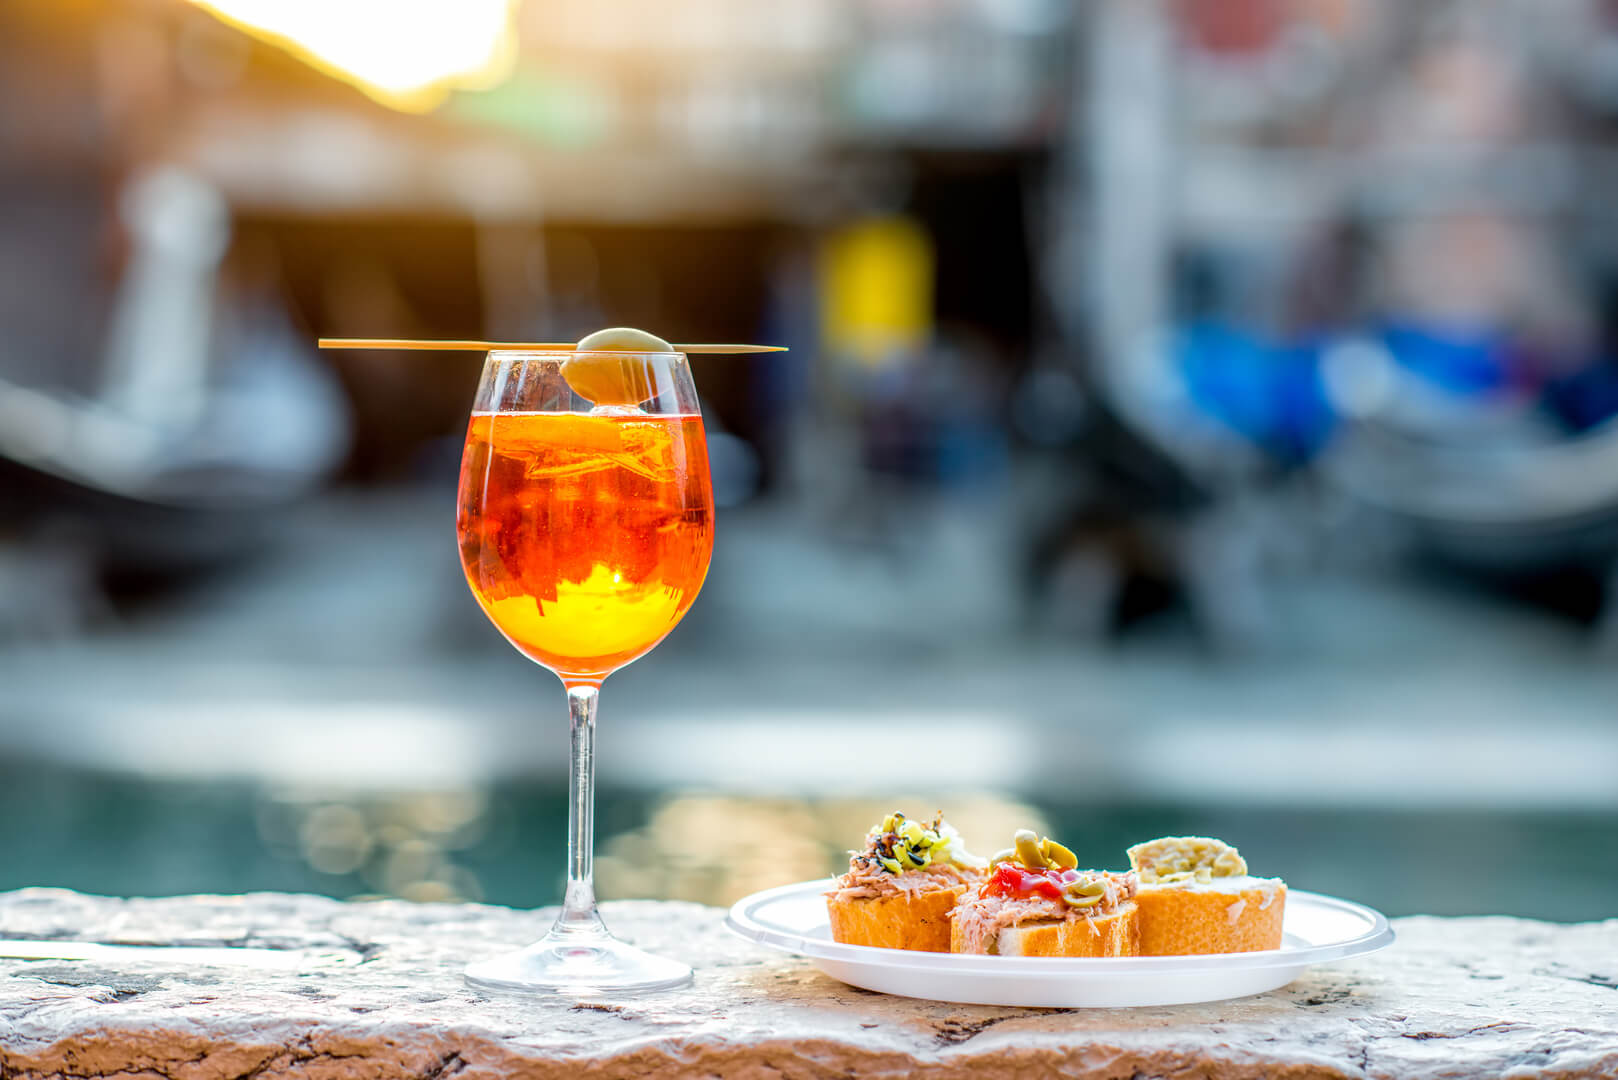 Напиток Spritz Aperol с венецианскими традиционными закусками чиккетти на фоне водного канала в Венеции. Традиционный итальянский аперитив. Изображение с небольшой глубиной резкости